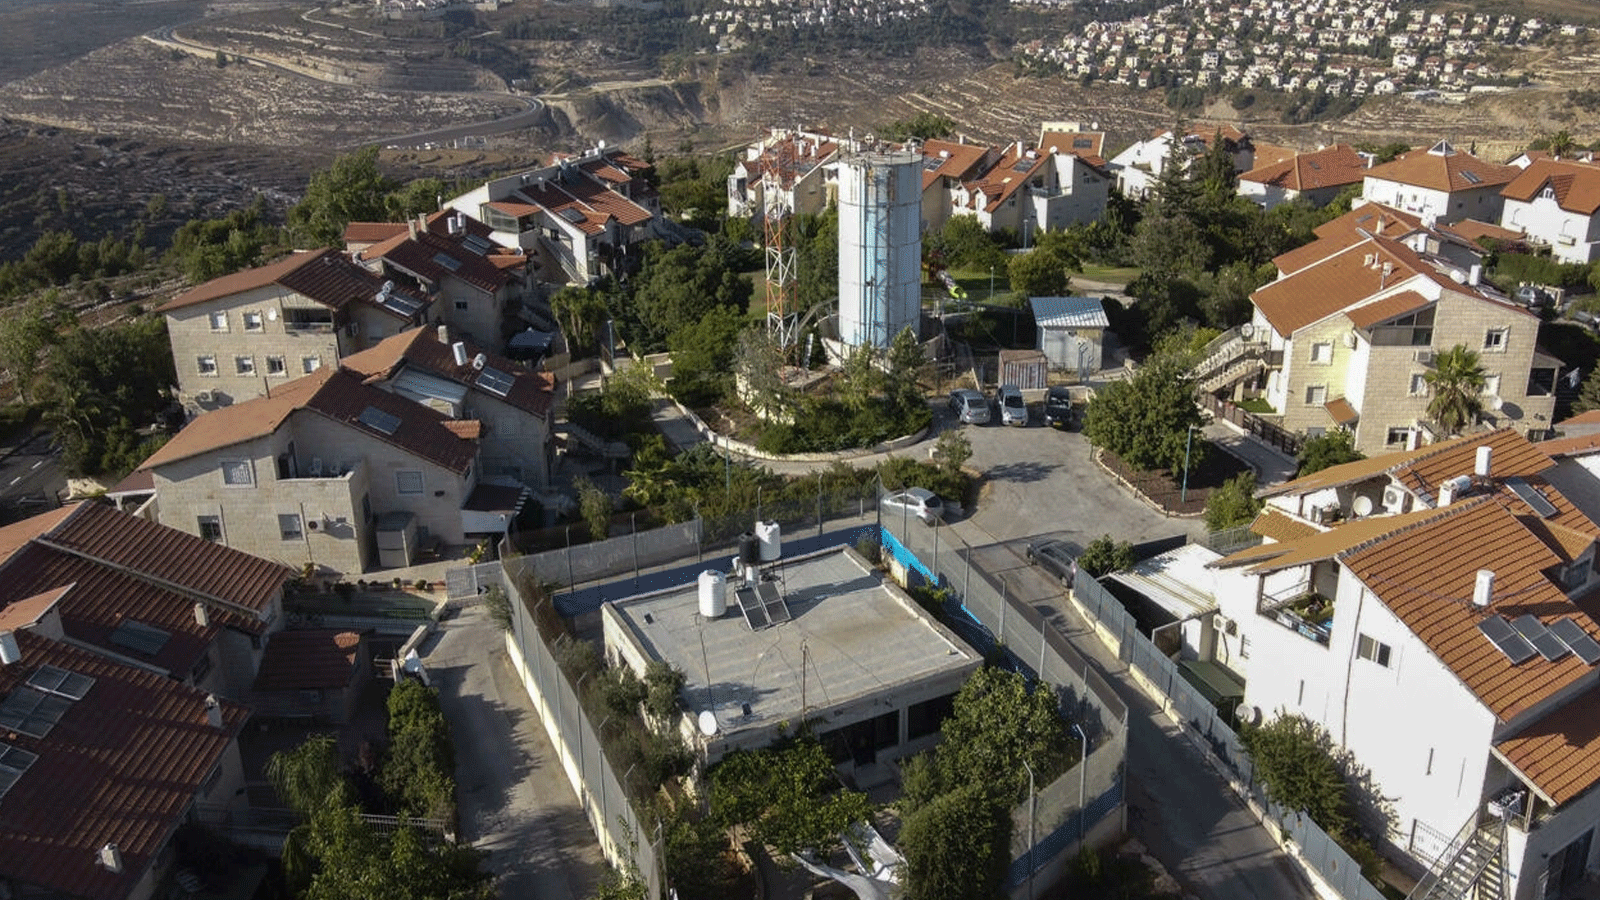  منزل العائلة الفلسطينية كان قائما وسط مساحات من الأراضي الزراعية، لكنه الآن يقع خلف بوابة صفراء يسيطر عليها الجنود الإسرائيليون